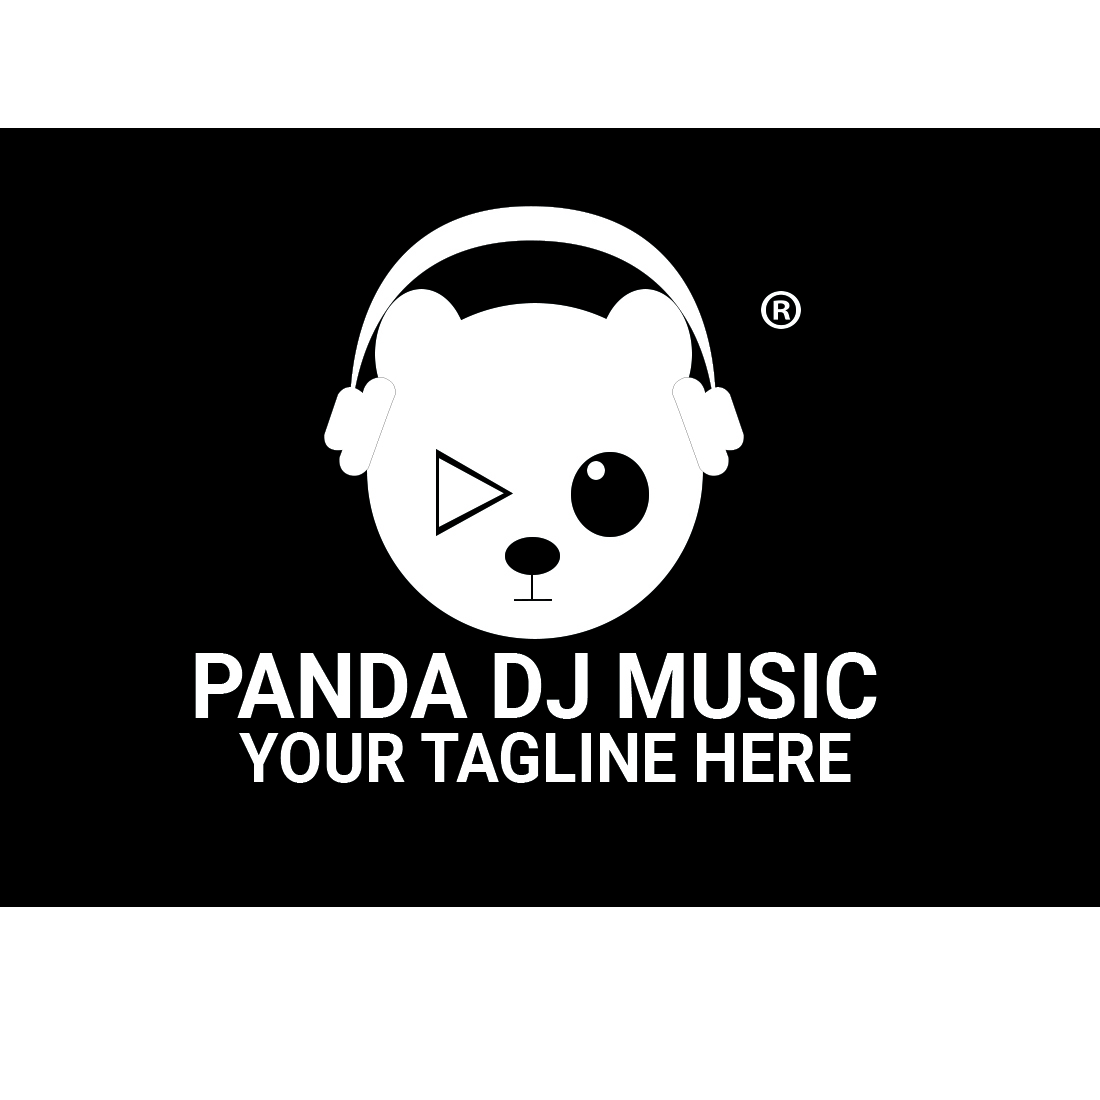 panda logos,panda vector design, panda dj music logo preview image.